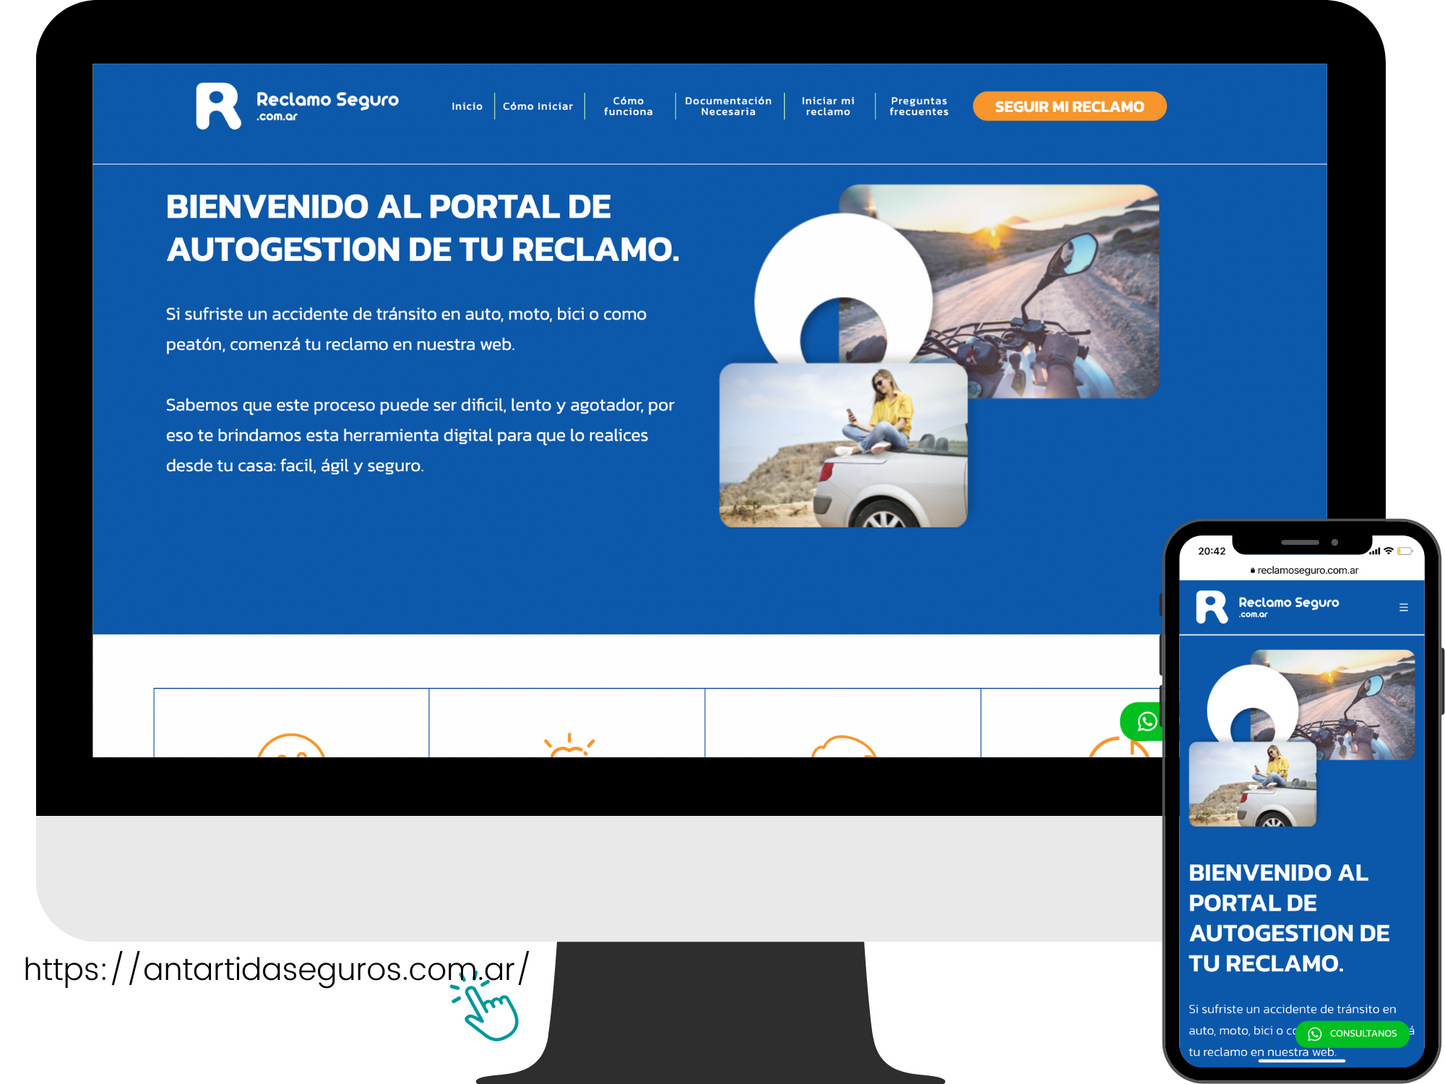 Self-management Claims Portal for Insurer: Reclamoseguro.com.ar